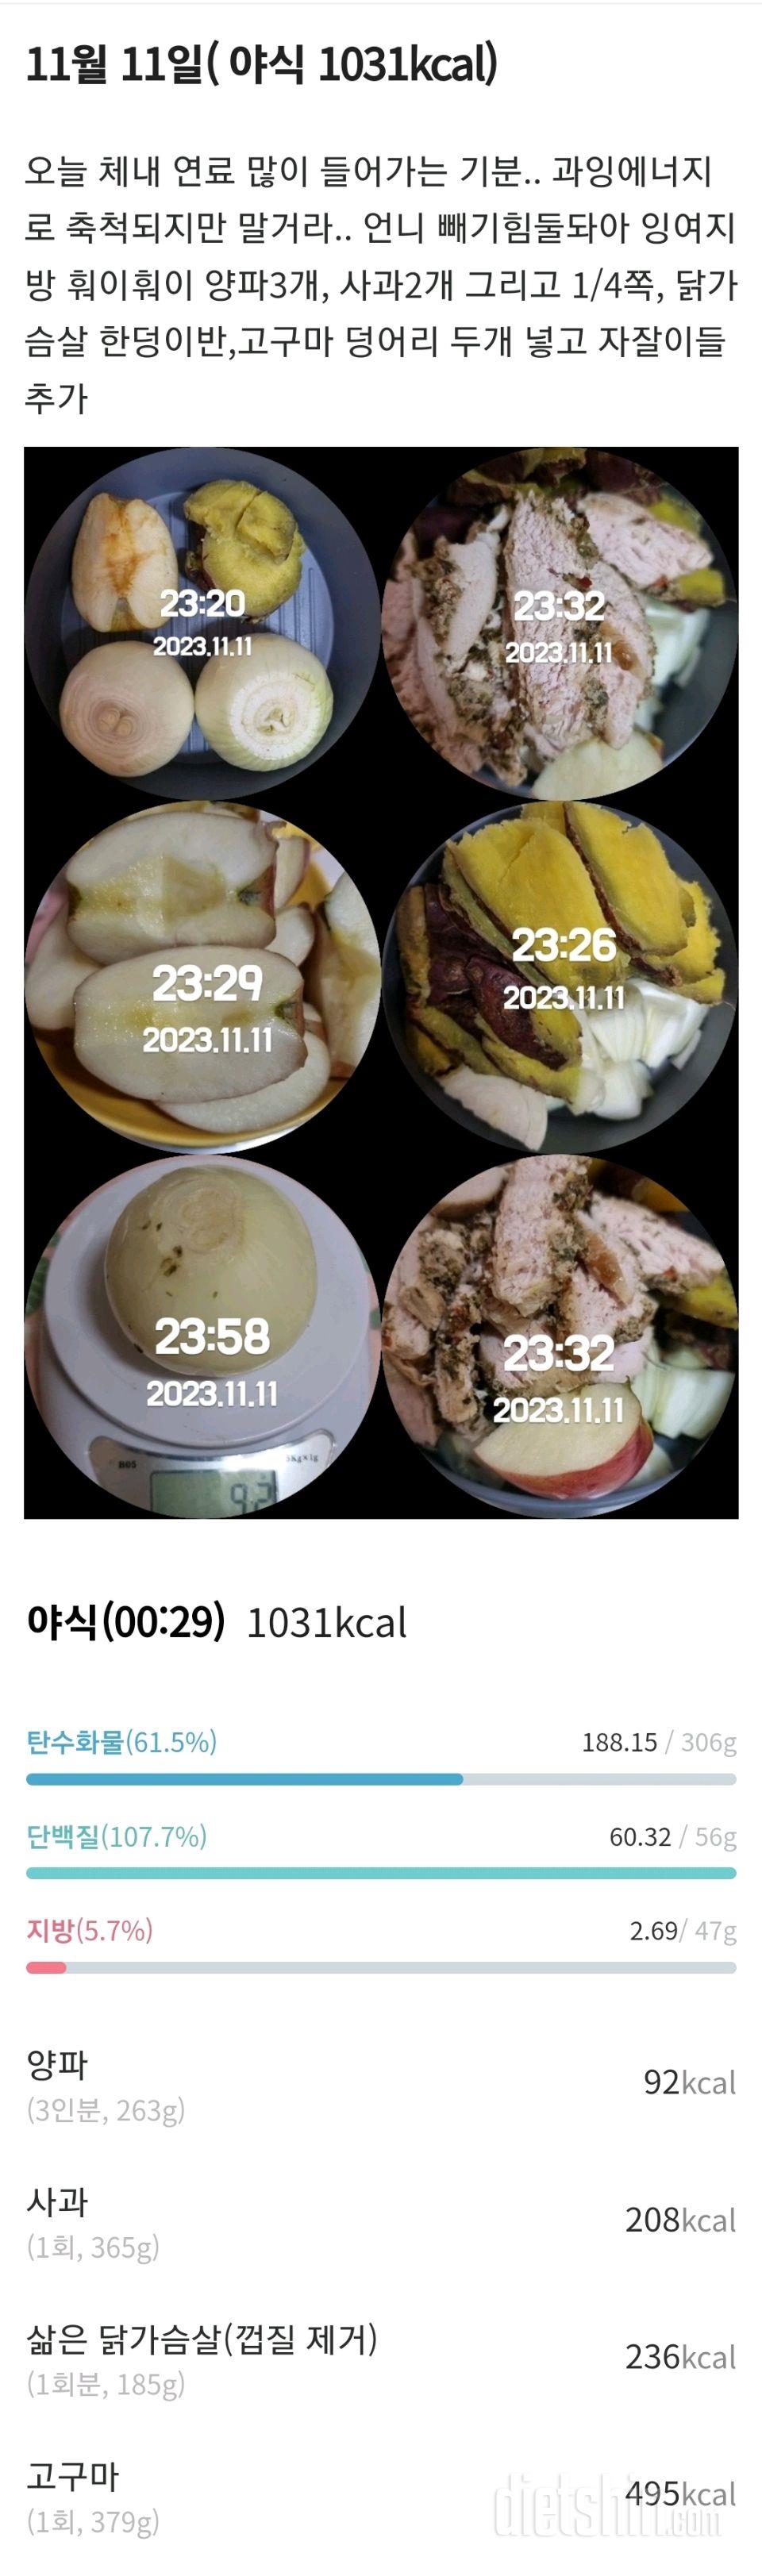 [다신22기]  11일차 식단